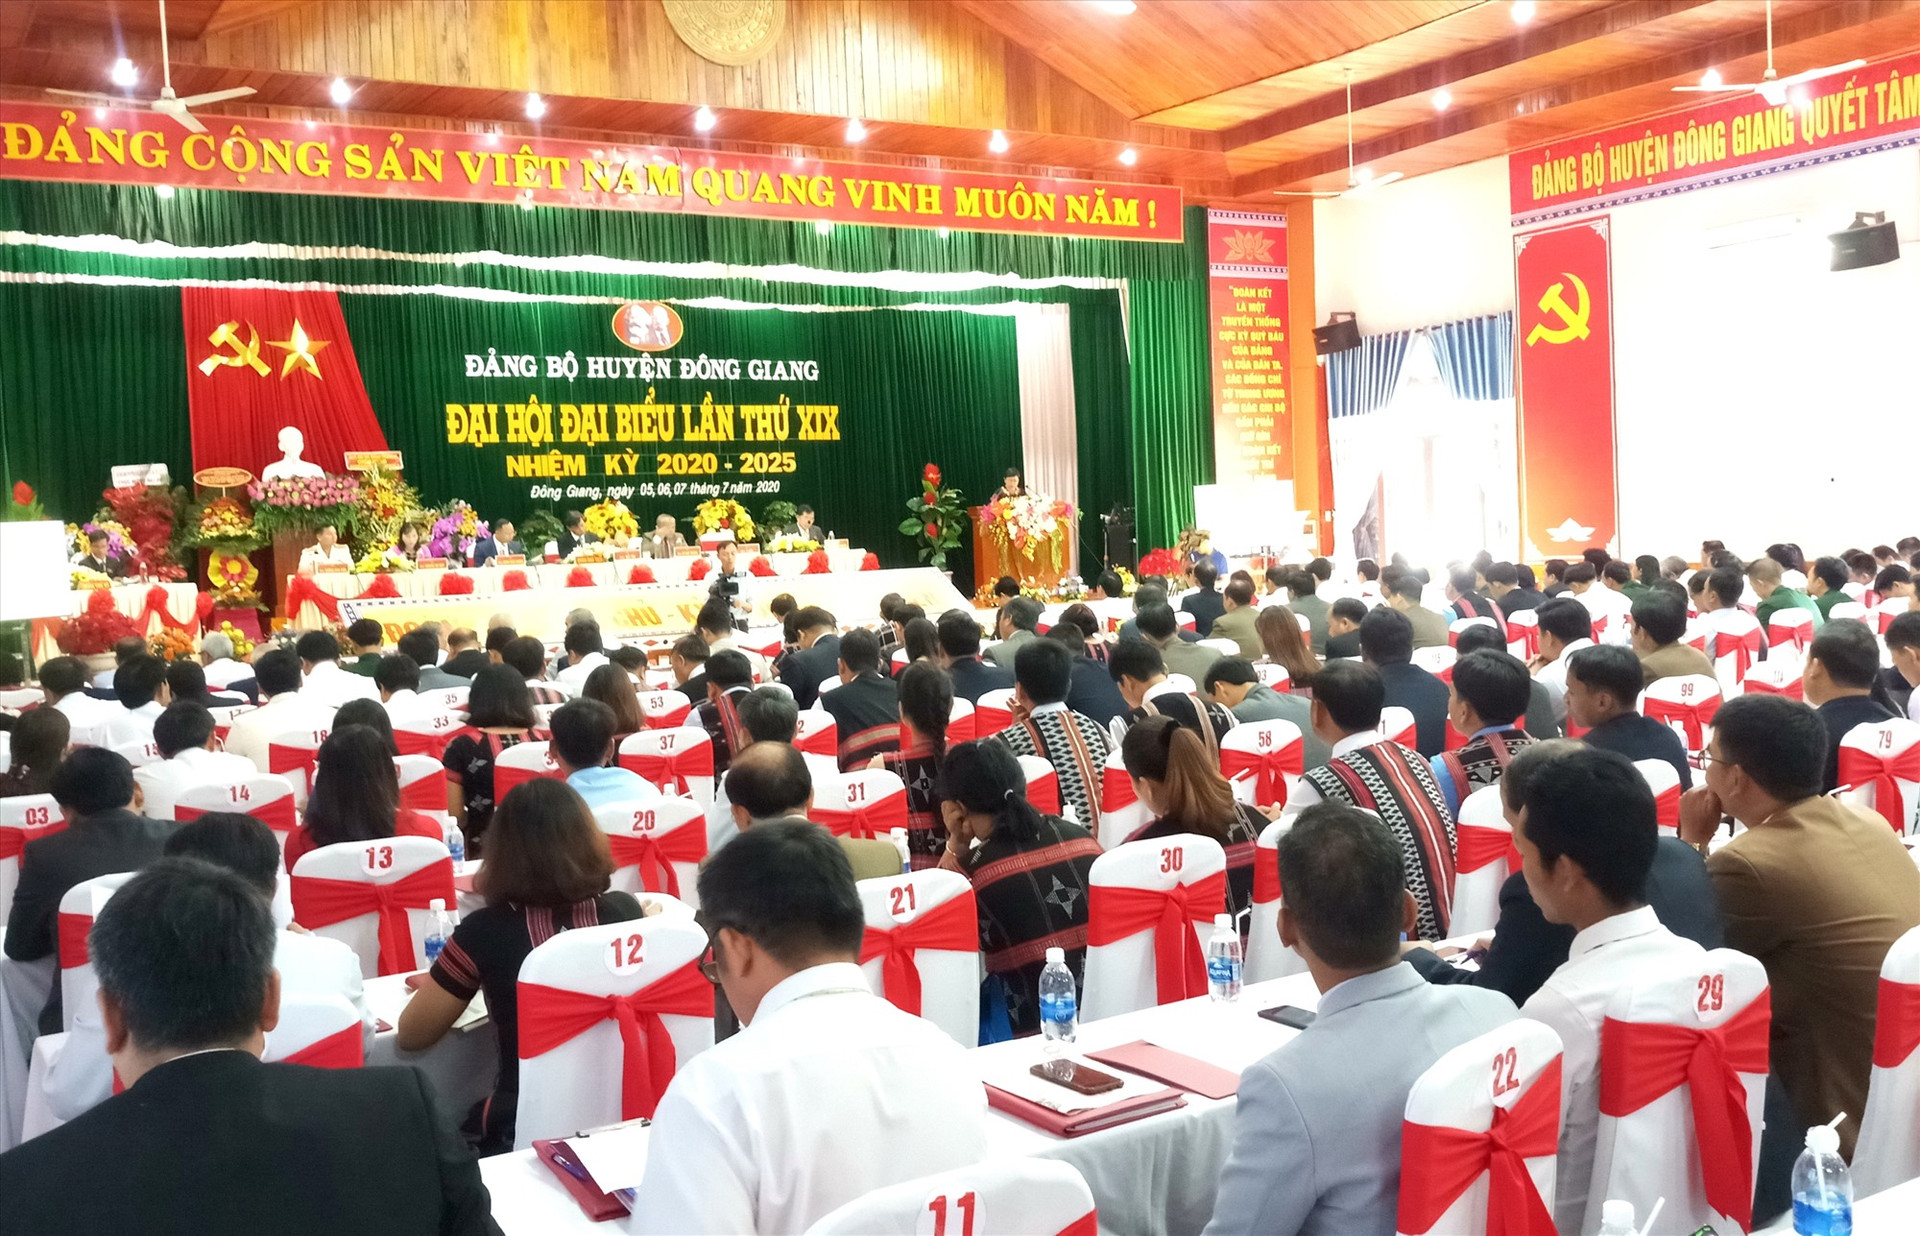 Đại hội đại biểu Đảng bộ huyện Đông Giang diễn ra vào sáng nay 6.7 với sự tham dự của 241 đảng viên đại diện cho hơn 2.000 đảng viên trong toàn Đảng bộ huyện. Ảnh: A.N